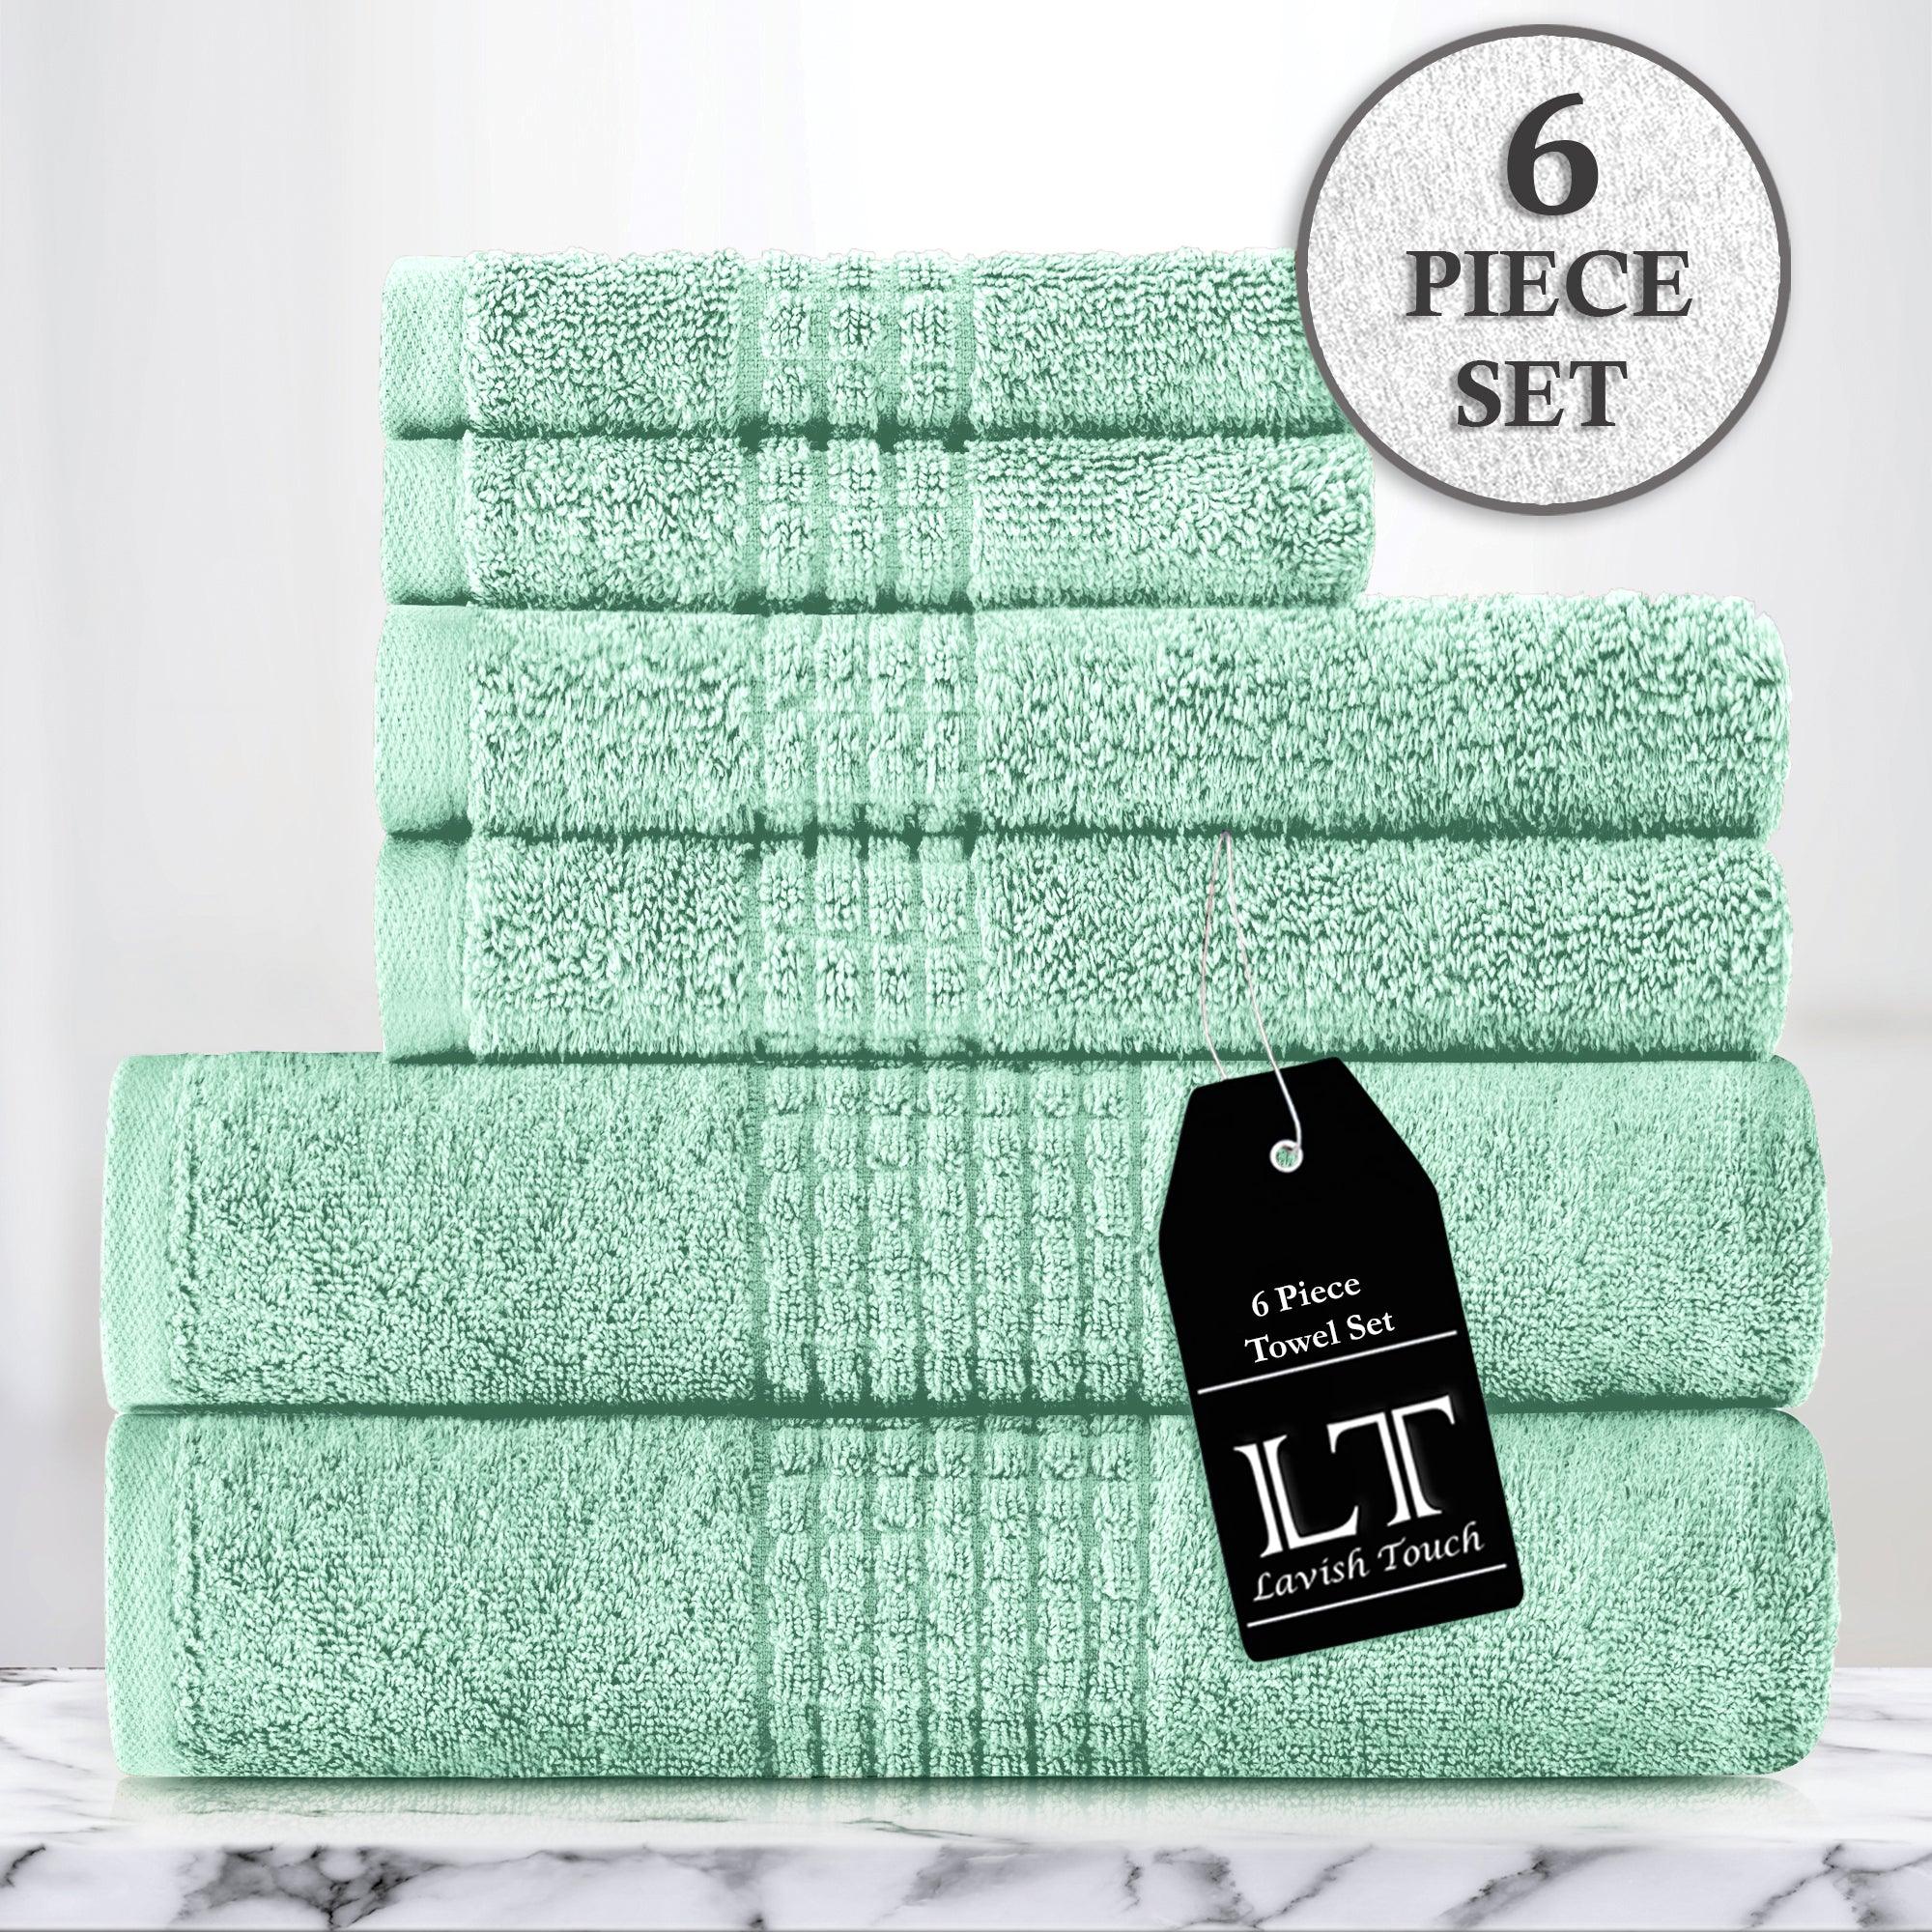 Lavish Touch 100% Cotton 700 GSM Zero Twist Towels - Lavish Touch